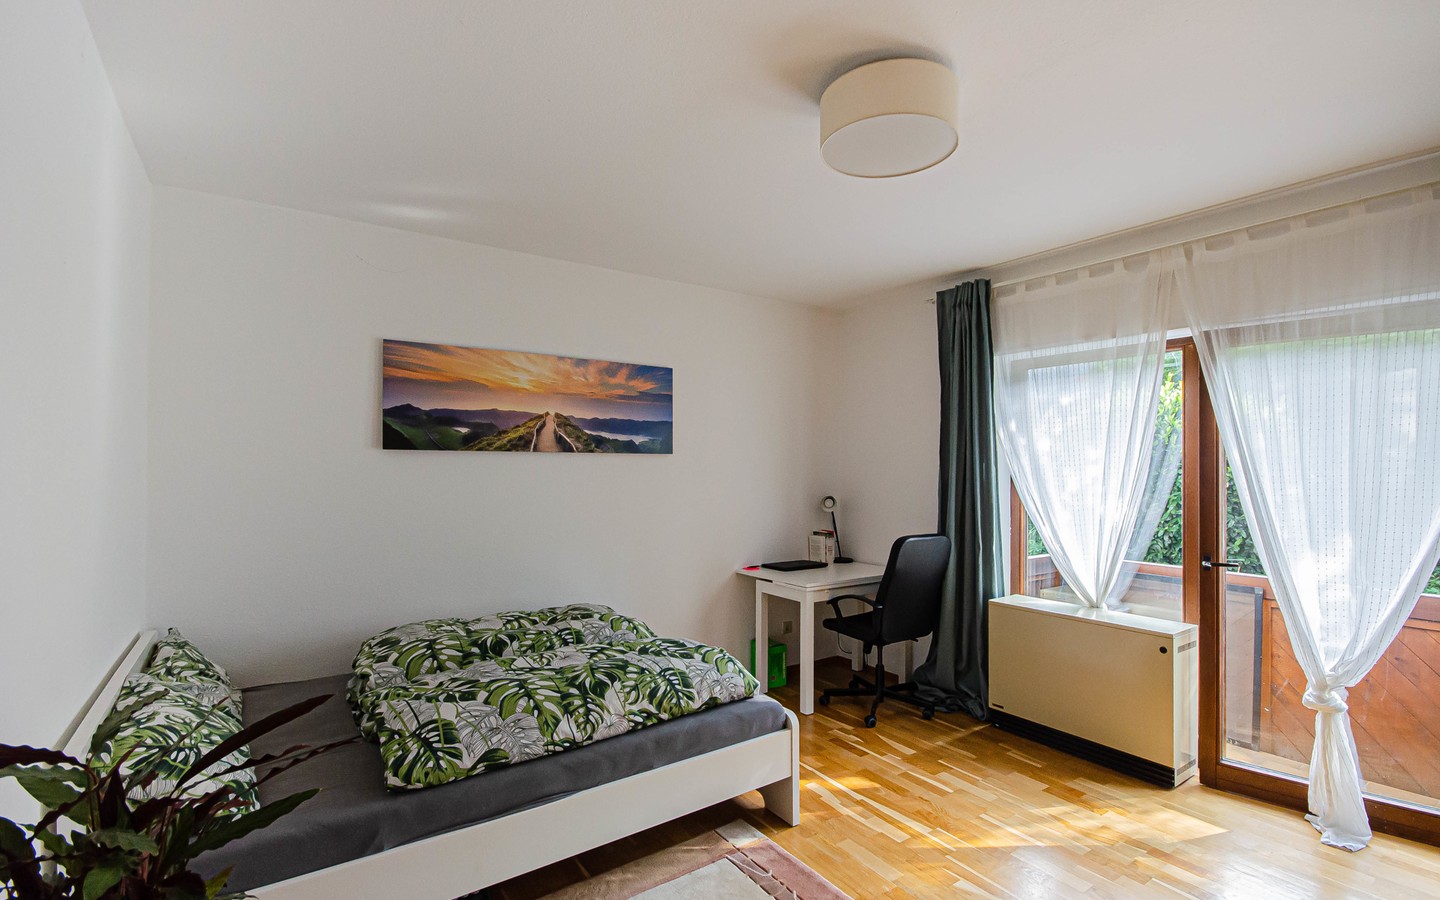 Schlafzimmer - Dossenheim: Gemütliche Zweizimmerwohnung in ruhiger Hanglage